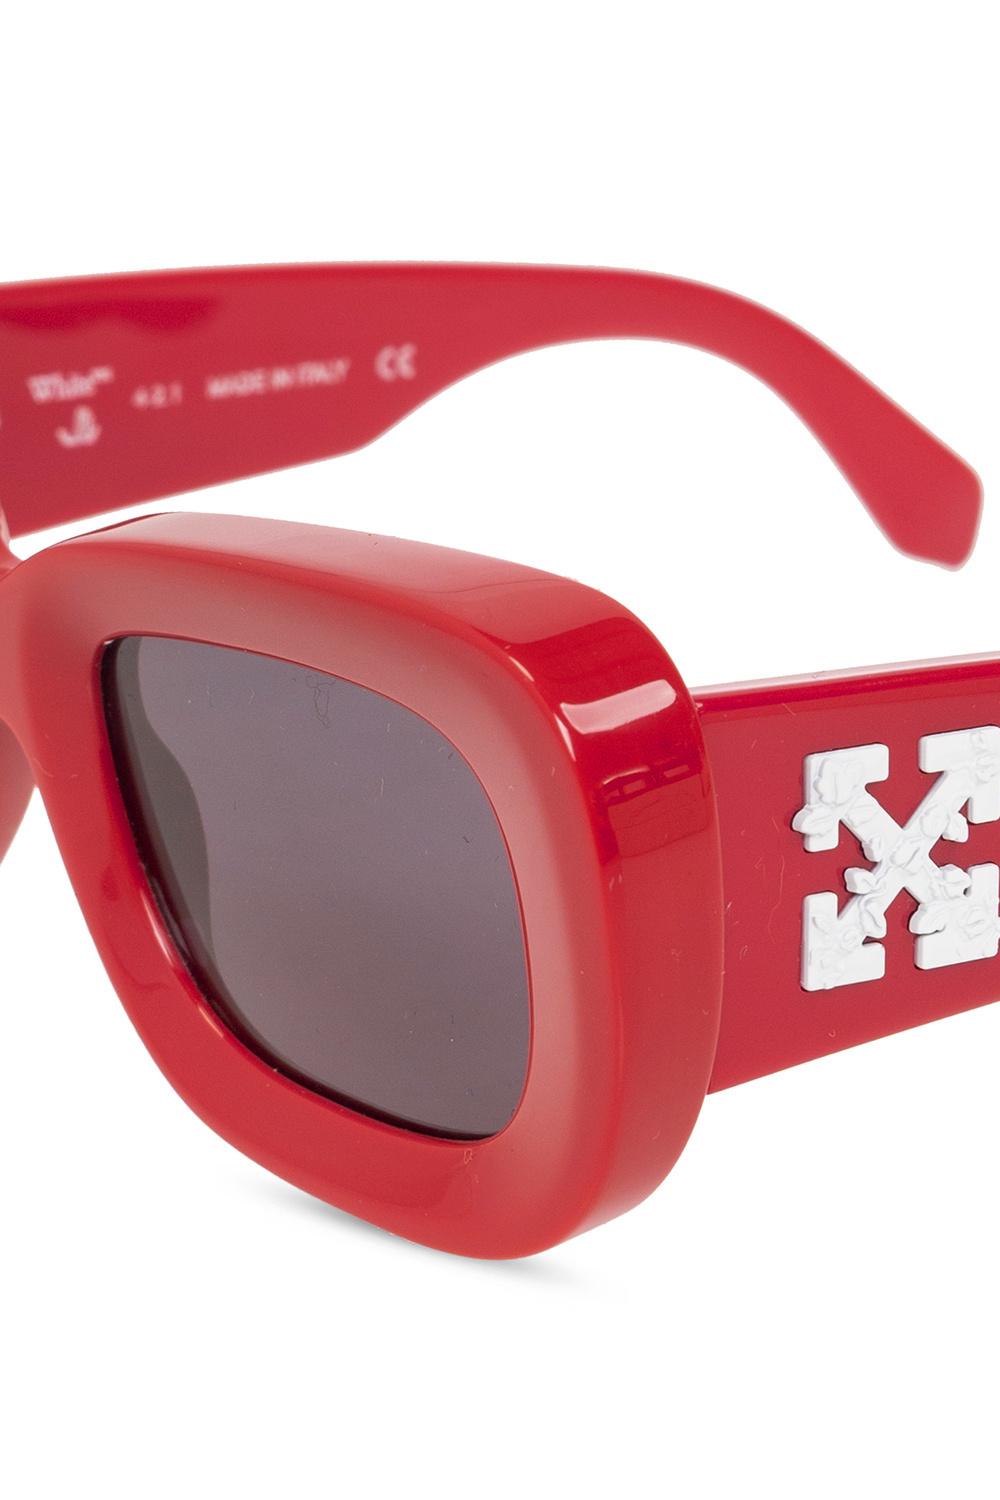 New Off-White sunglasses col. red, Occhiali